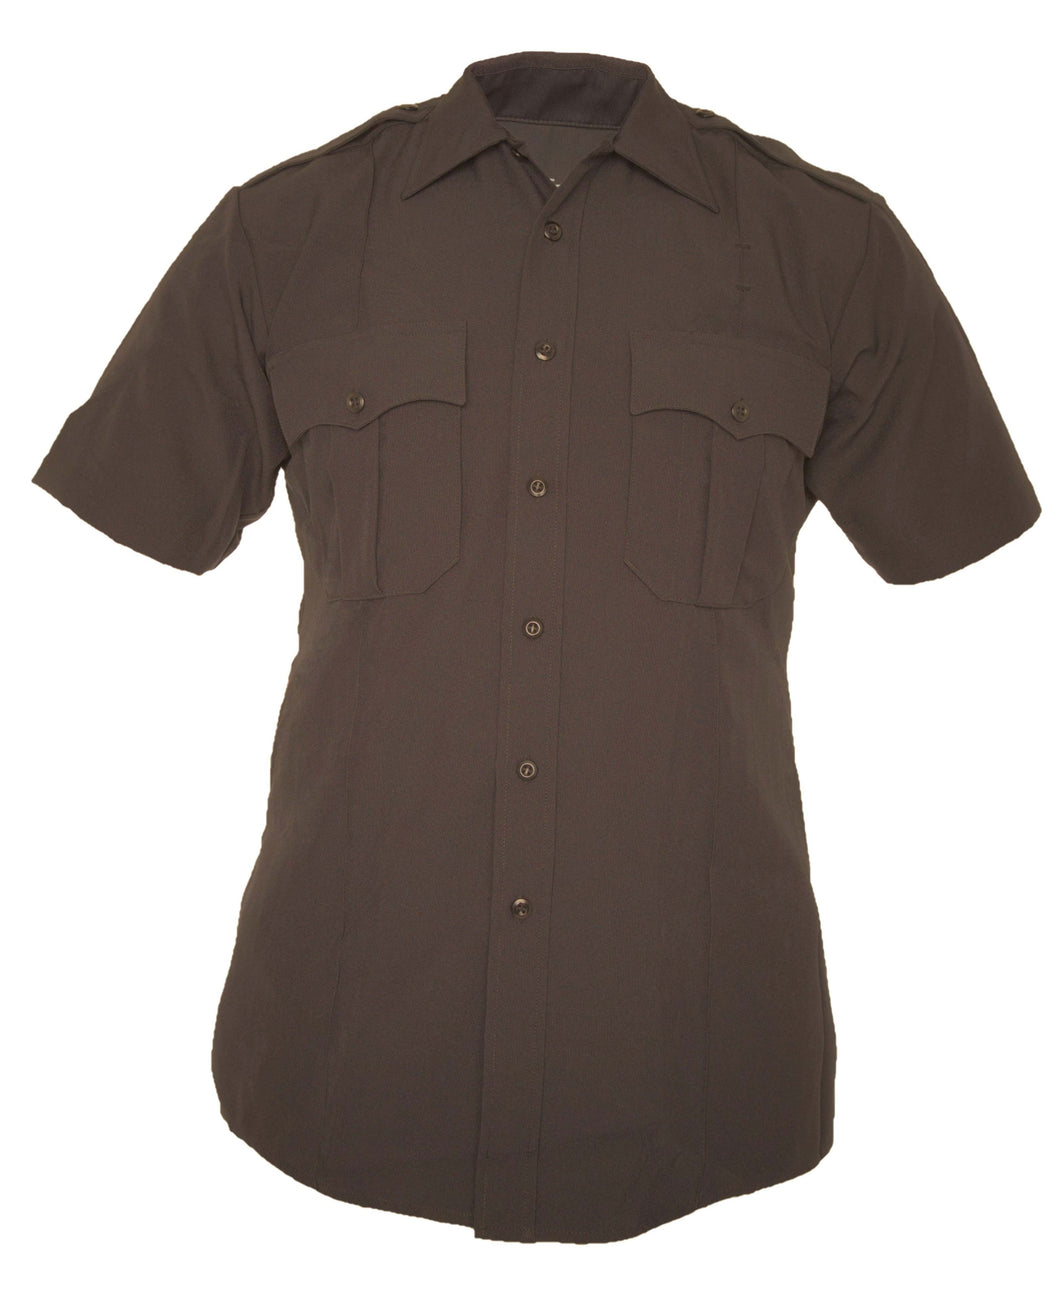 TexTrop2 Short Sleeve Shirt with Hidden Zipper Mens